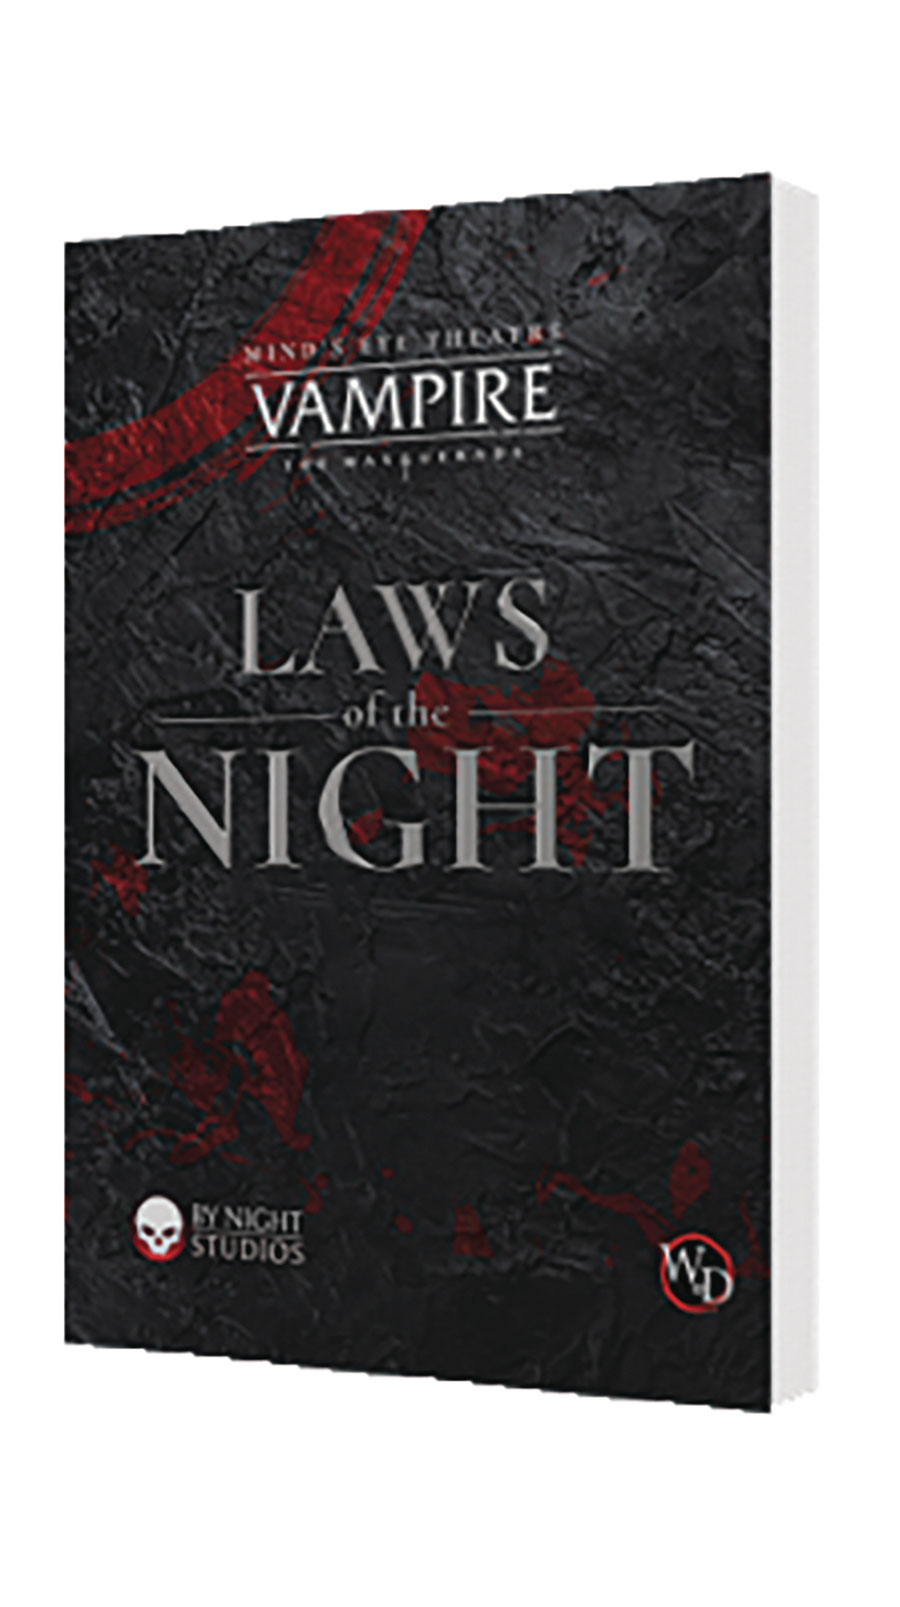 VAMPIRE MASQUERADE RPG LAWS OF THE NIGHT SC (C: 1-1-2)